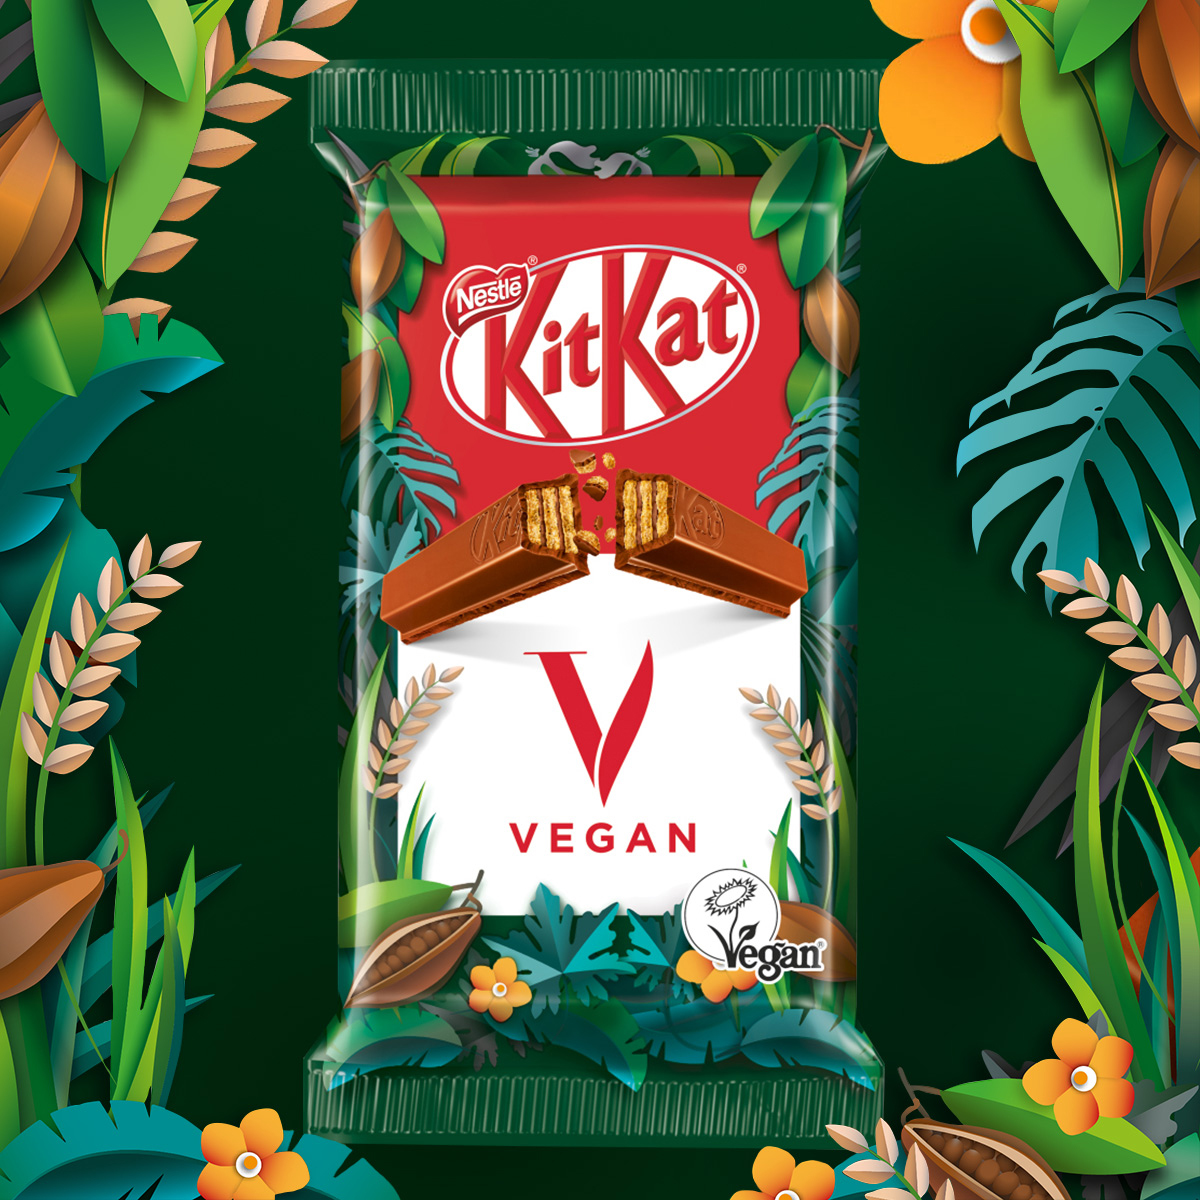 KitKat Austria